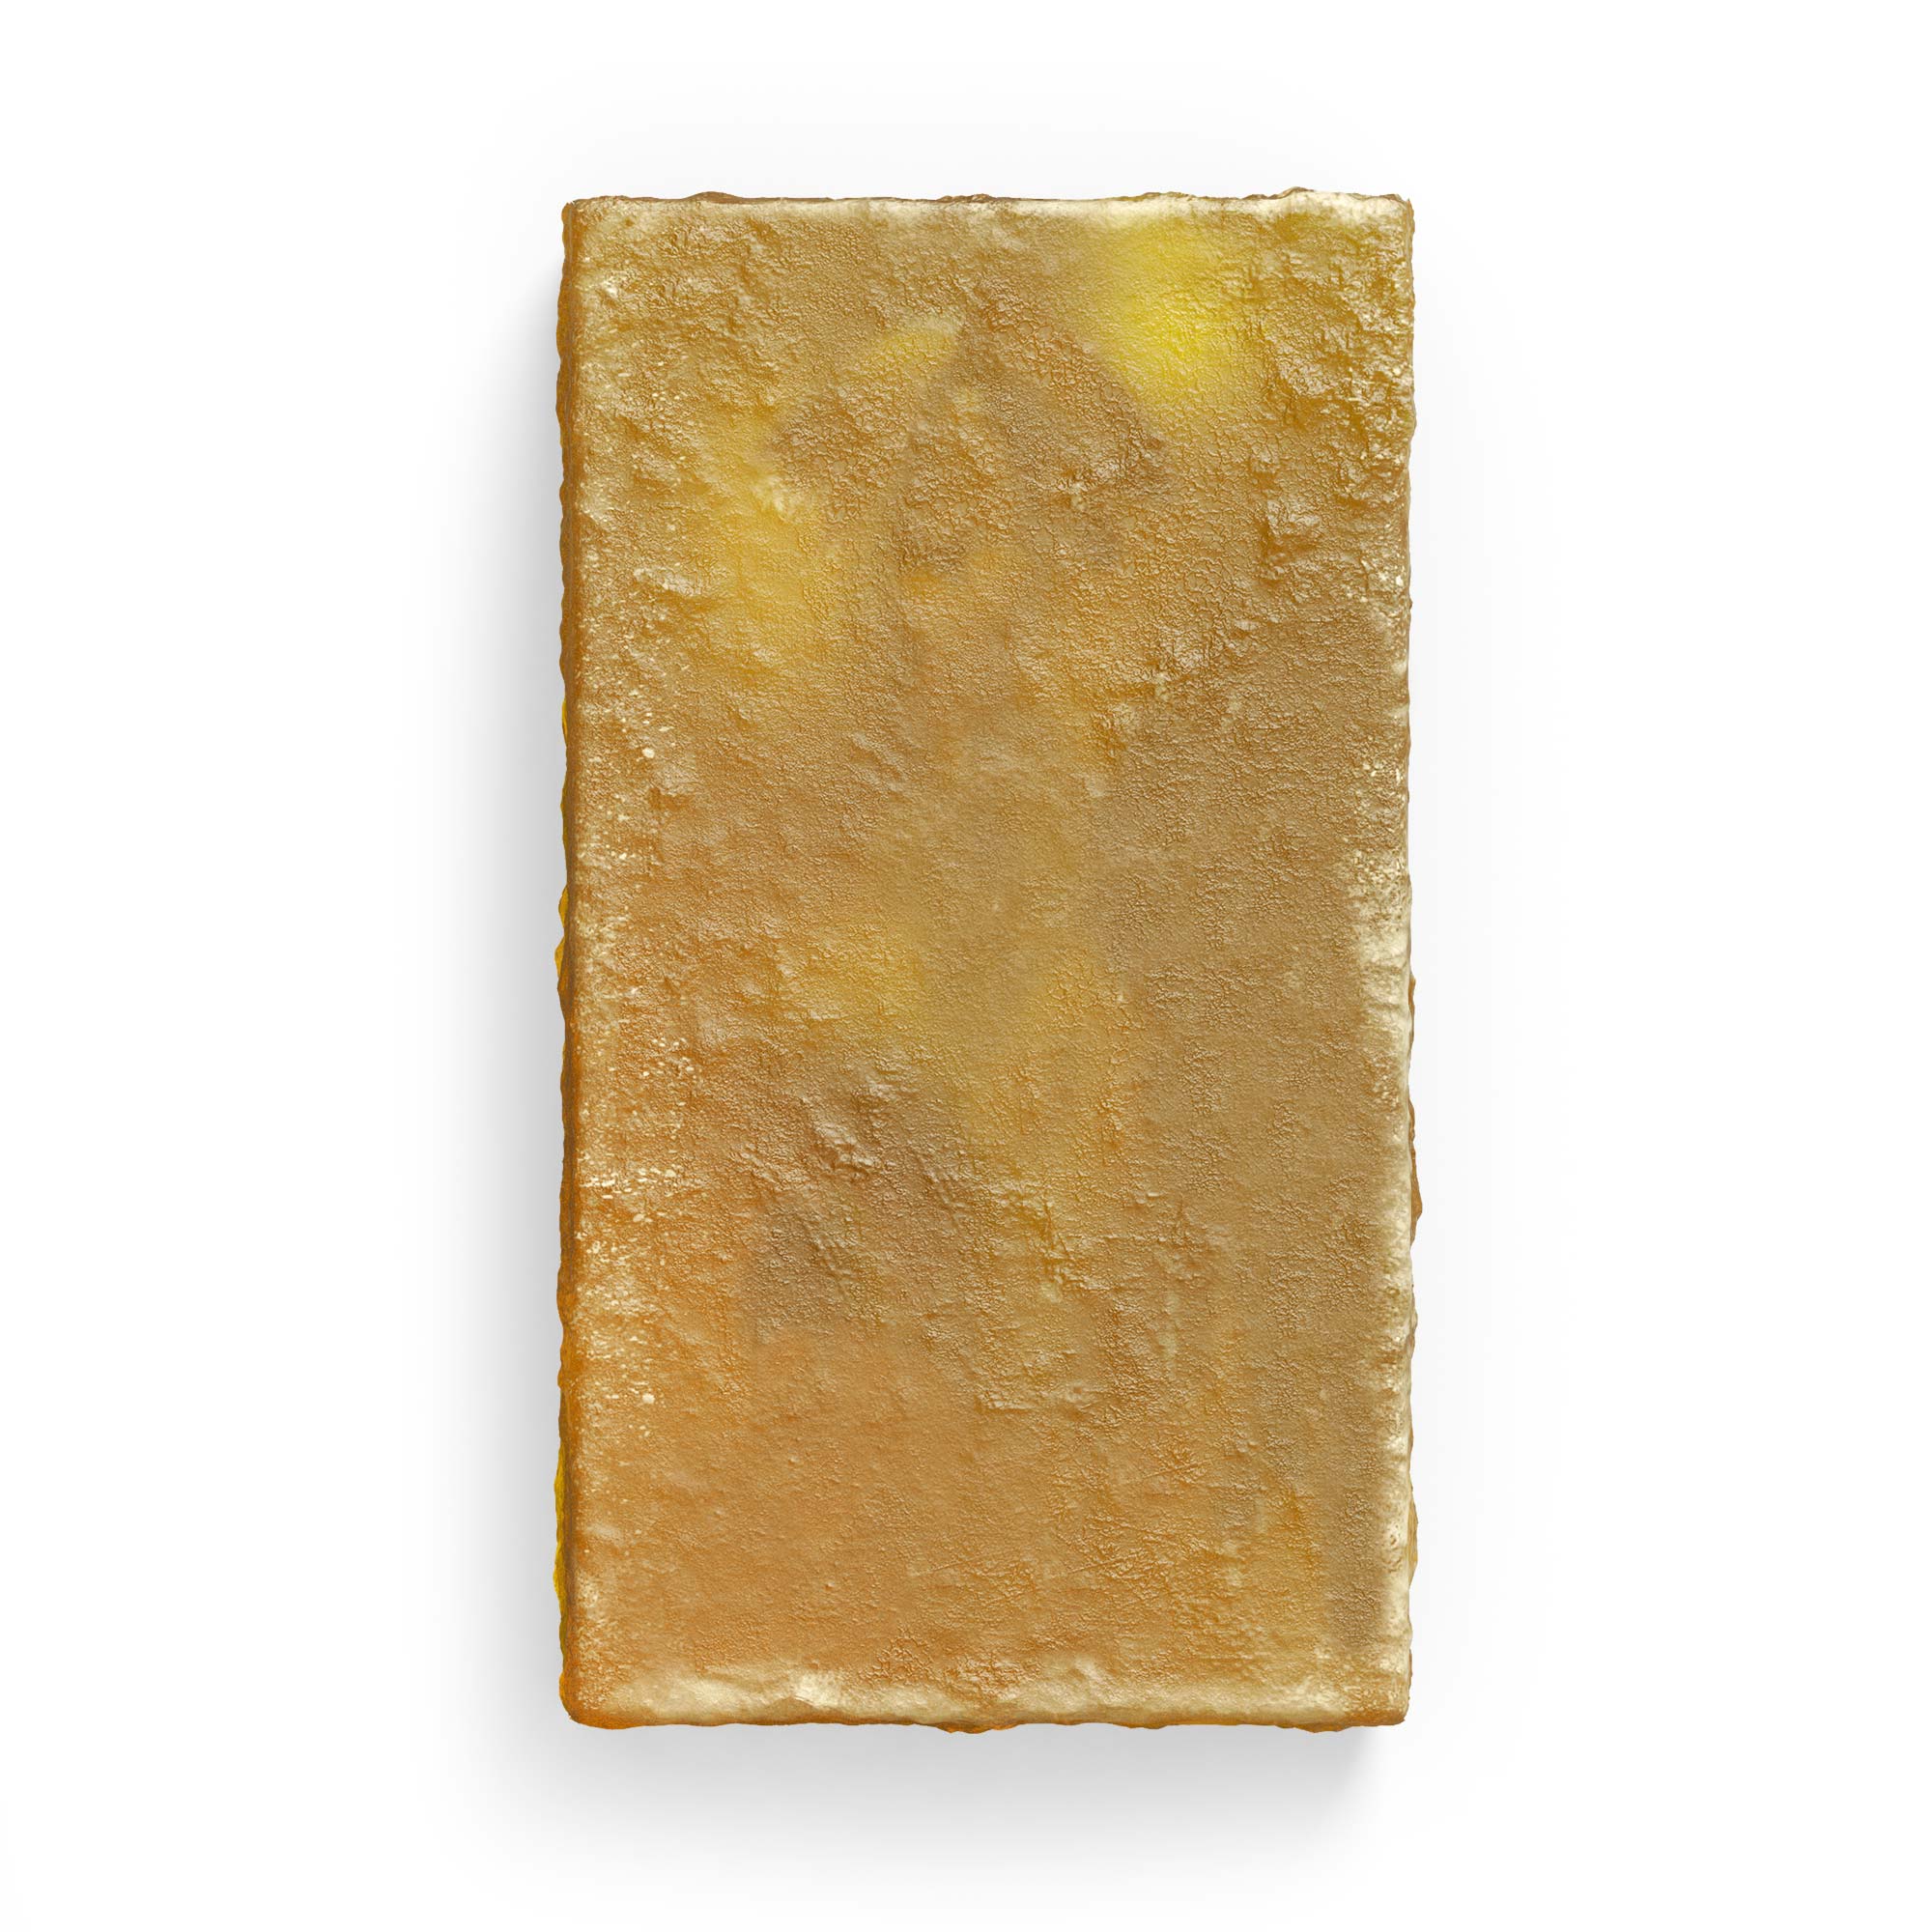 Golden Marigold Solid Soap Bar